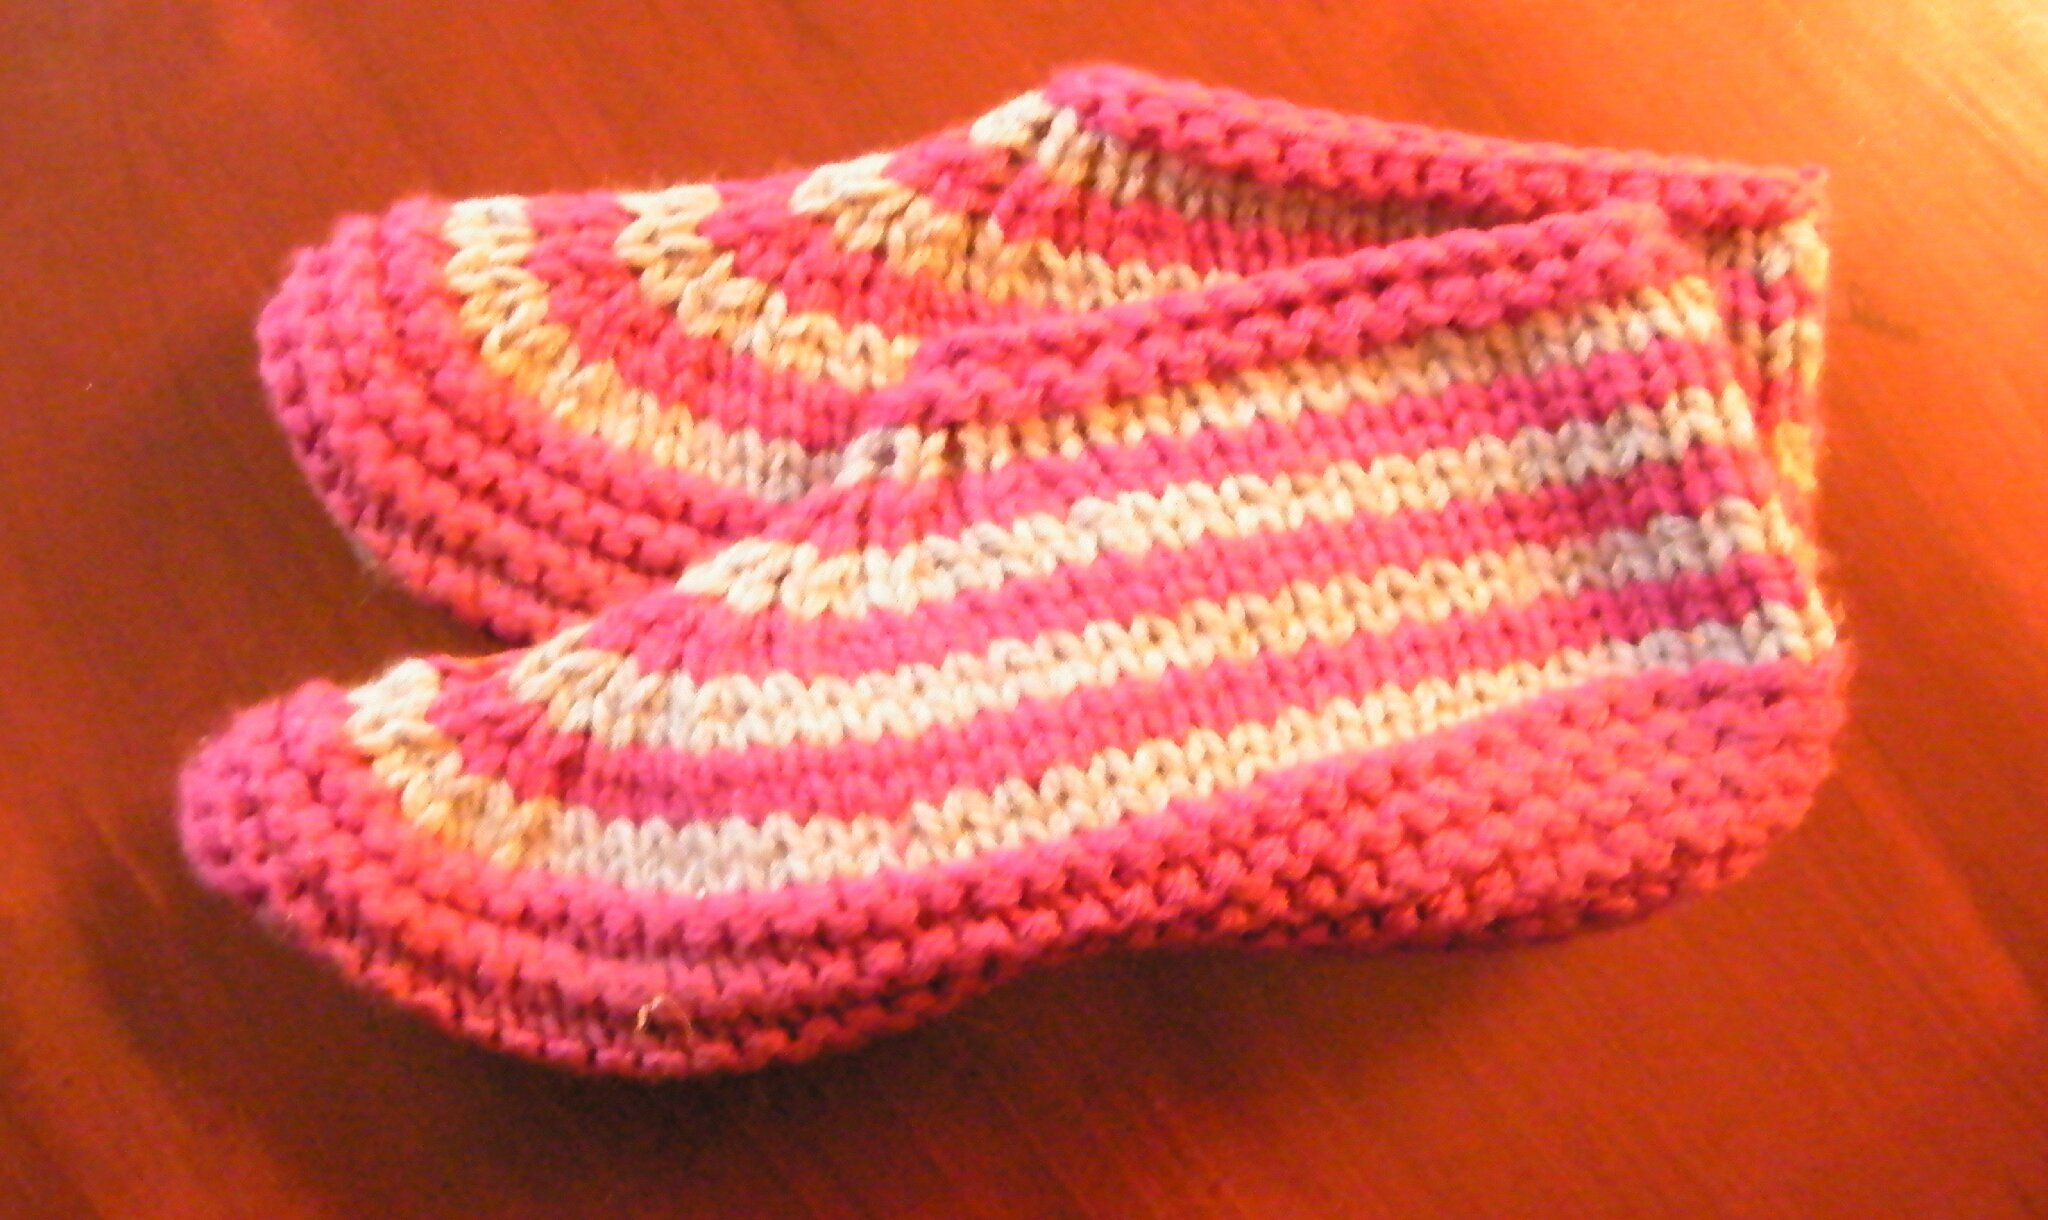 modele de chausson a tricoter pour adulte